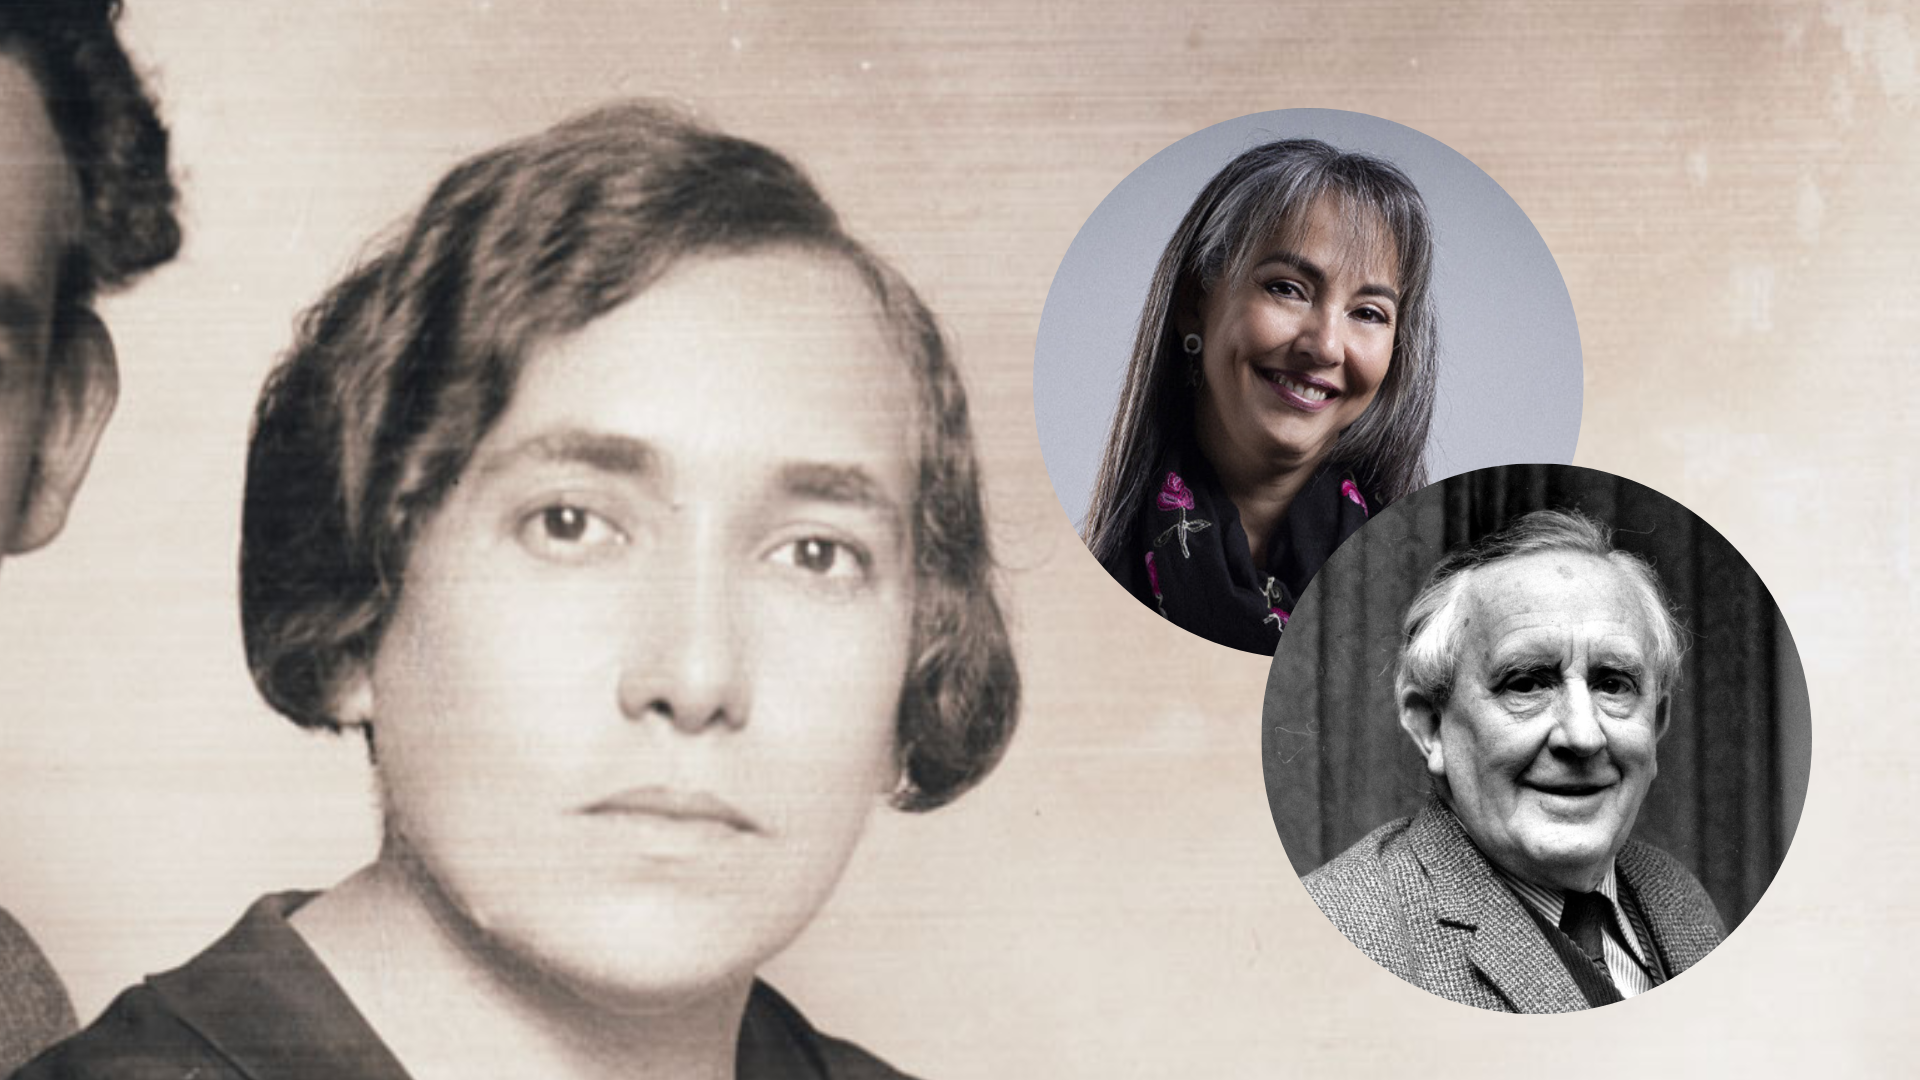 María Wiesse, Fabiola Hablützel y J.R.R. Tolkien entre las recomendaciones literarias de la semana.